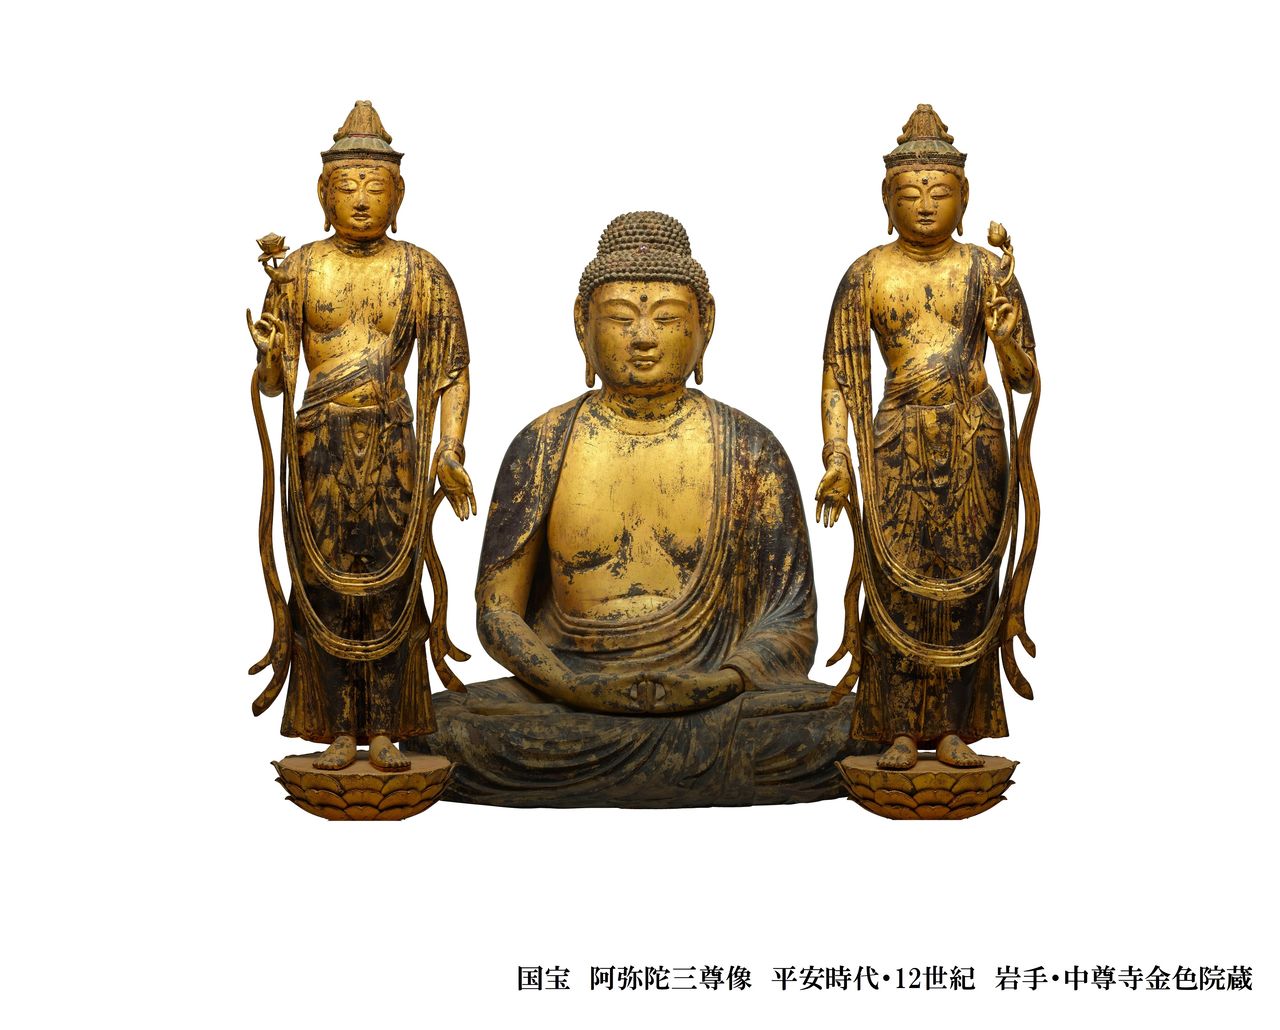 يعتبر تمثال أميتابها بوذا والتمثالان المجاوران له من الكنوز الوطنية اليابانية. (© معبد تشوسونجي)